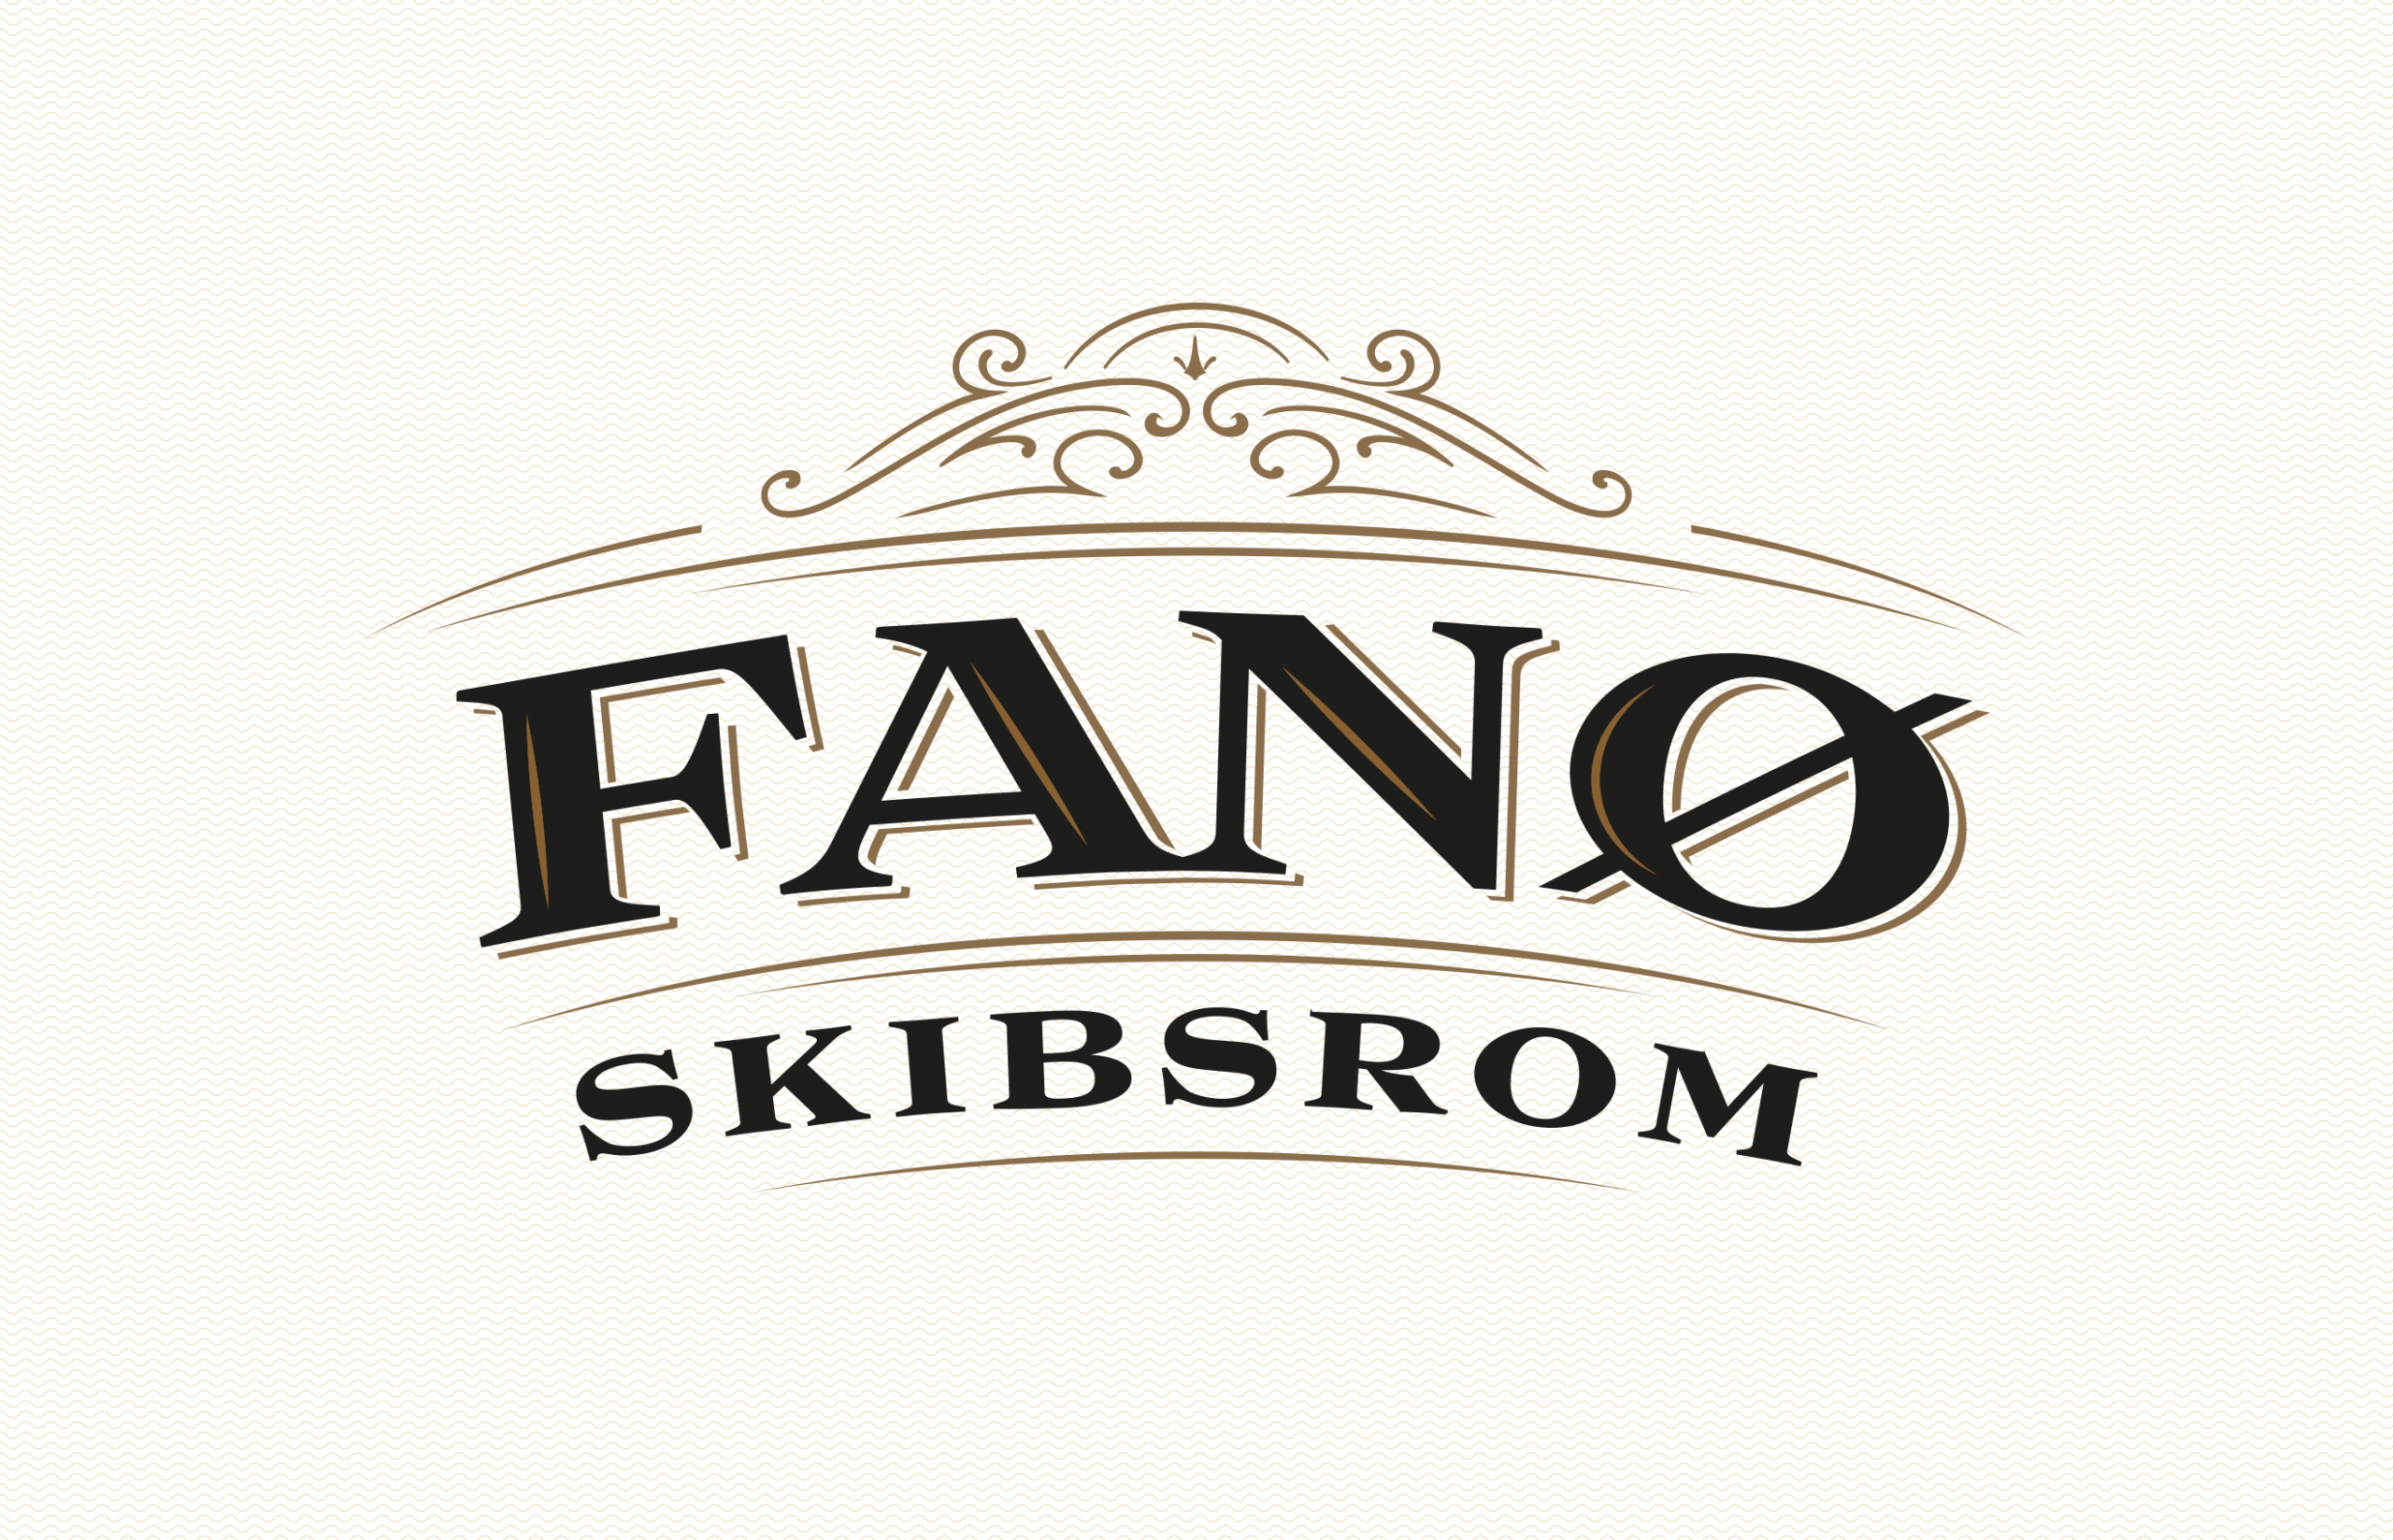 Fano_skibsrom_simply_brand_design_2640x1700_3